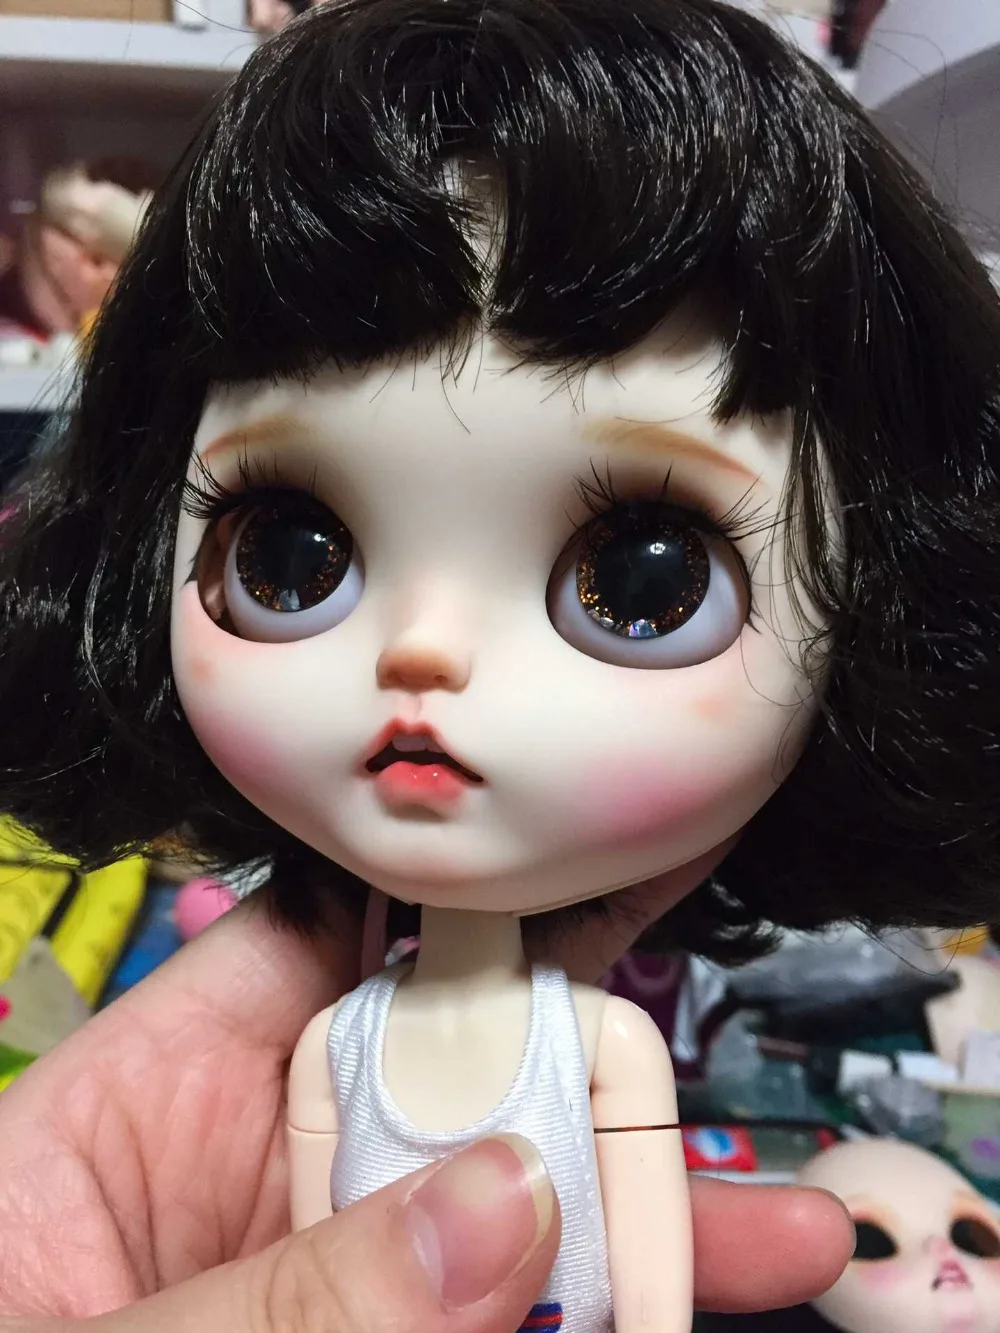 Кастомизация кукла Обнаженная blyth кукла, лицевая панель 20190411-1